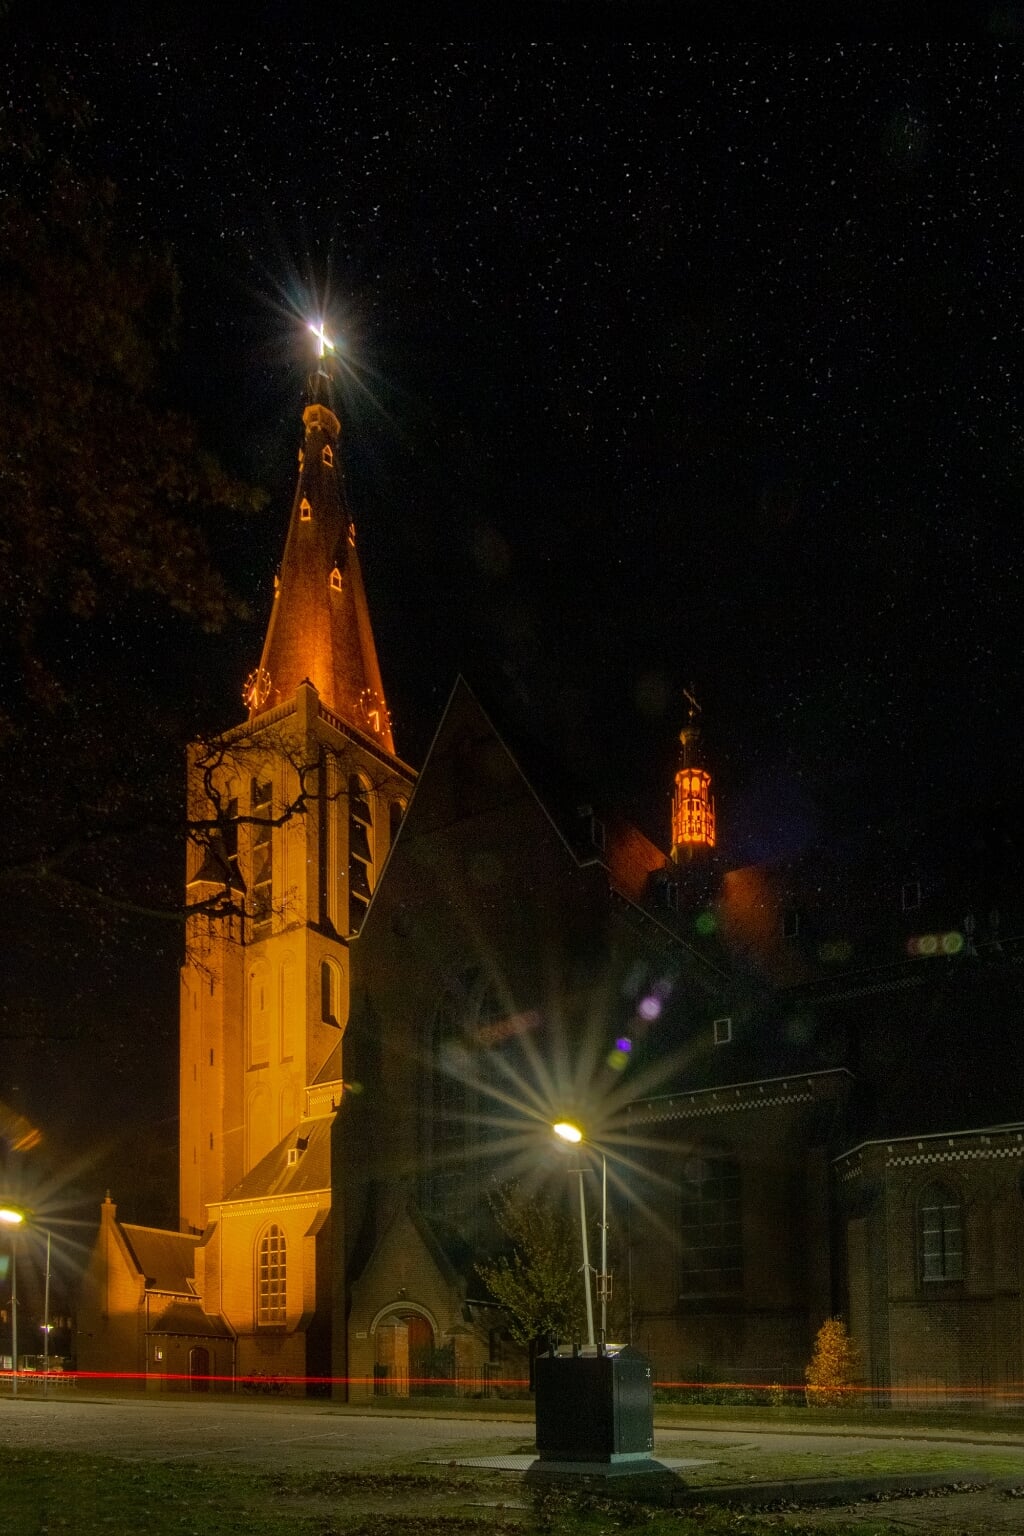 De oranje uitgelichte toren van de Calixtus in Groenlo. Foto: Marcel Houwer